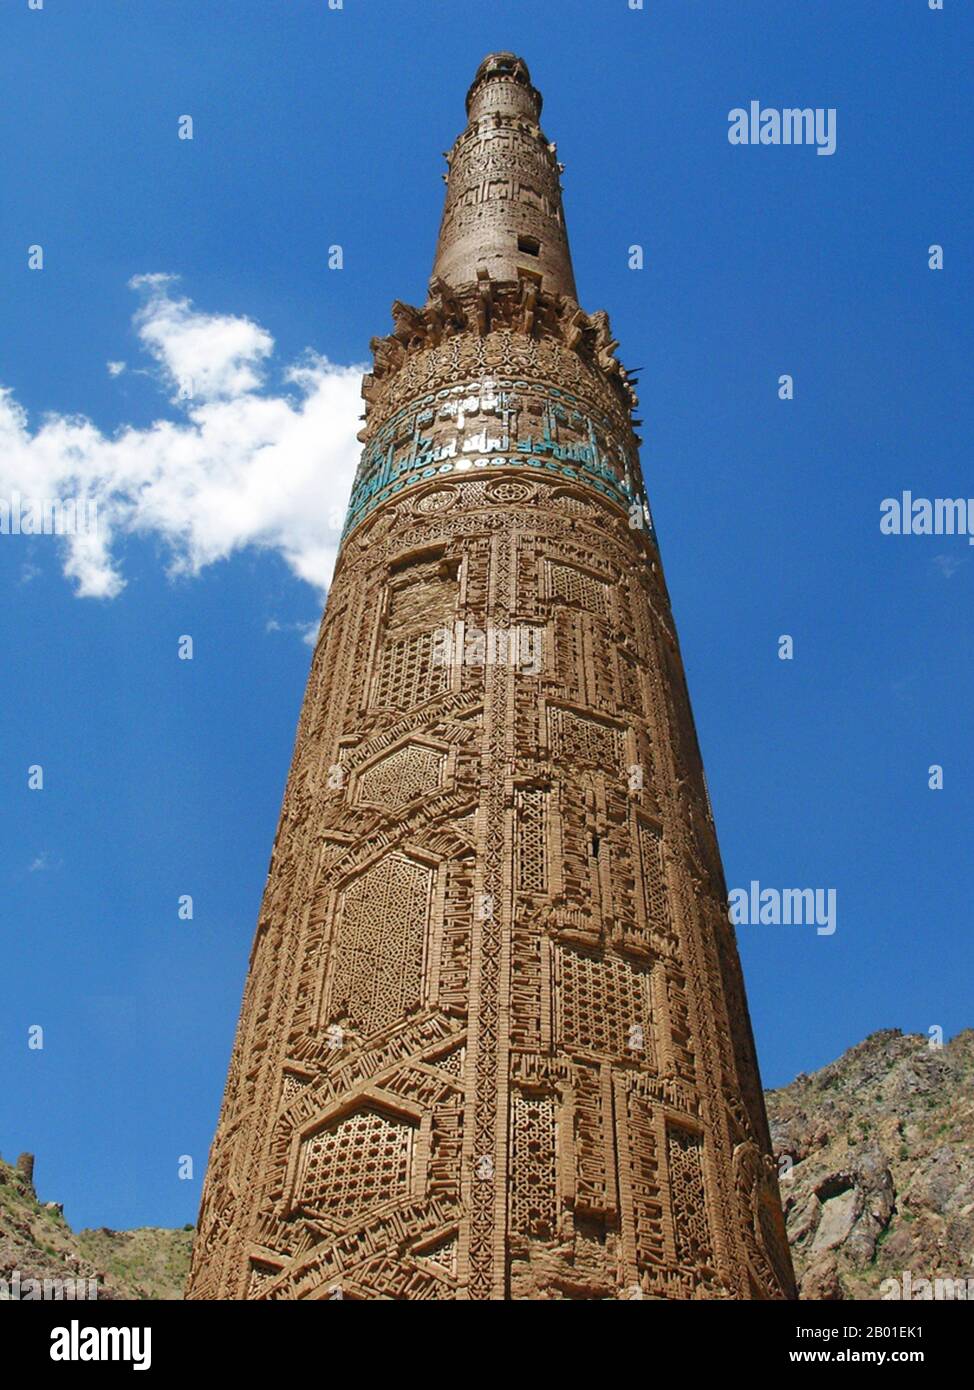 Afghanistan: Il Minareto di Jam, distretto di Shahrak, provincia di Ghor, 1190 d.C. Il Minareto di Jam è un sito patrimonio dell'umanità dell'UNESCO nell'Afghanistan occidentale. Si trova nel distretto di Shahrak, nella provincia di Ghor, vicino al fiume Hari. Il minareto alto 65 metri, circondato da montagne che raggiungono il 2400m, fu costruito nel 1190s, interamente in mattoni cotti. E' famosa per la sua intricata decorazione in mattoni, stucchi e piastrelle smaltate, che consiste in bande alternate di calligrafia kufi e naskhi, disegni geometrici, e versi del Corano (il surat Maryam, relativo a Maria, la madre di Gesù). Foto Stock